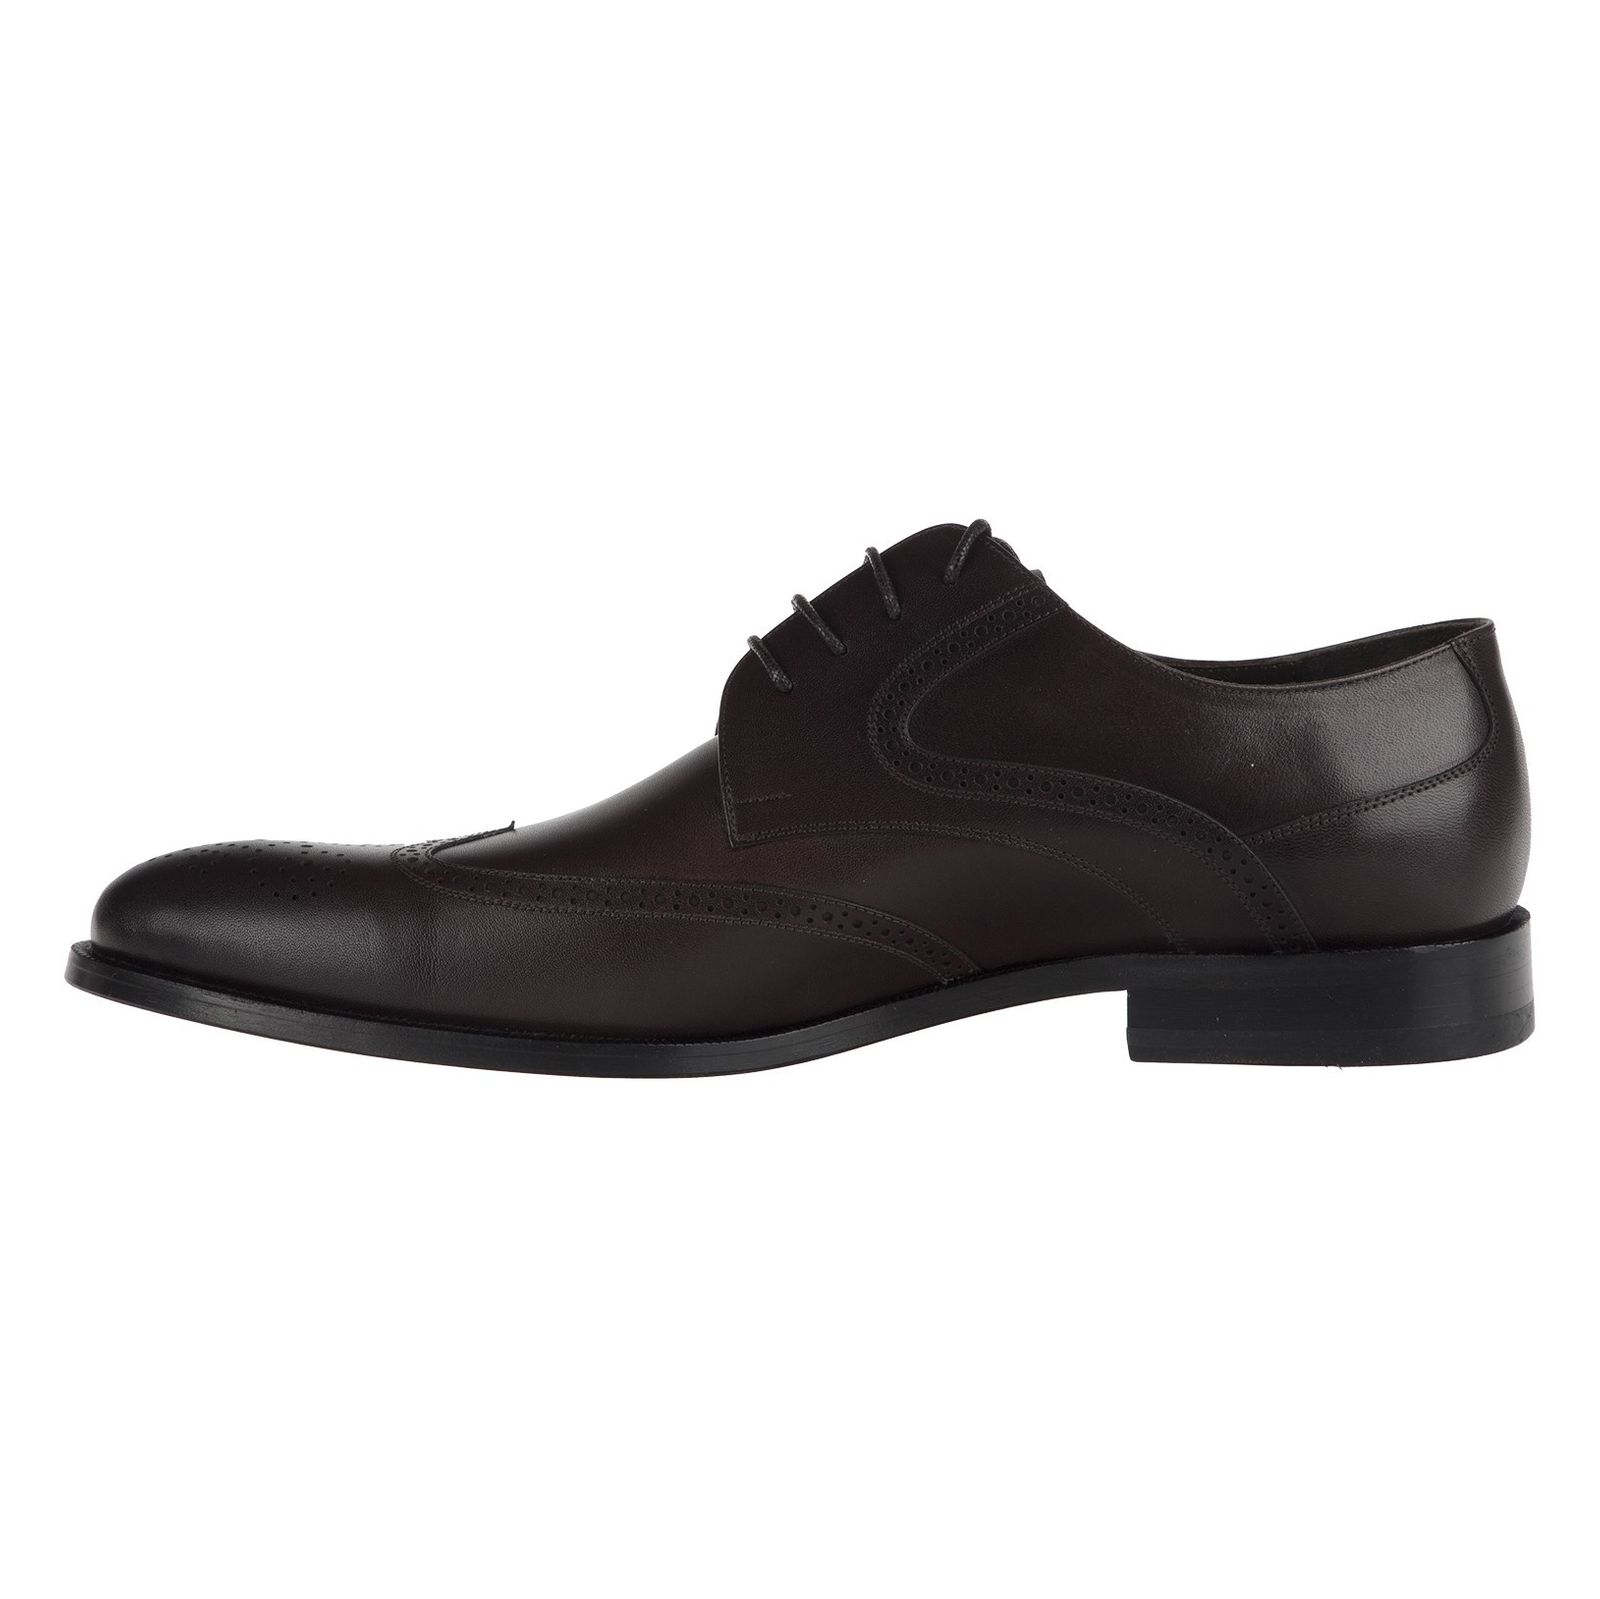 کفش رسمی چرم مردانه - گاندو - قهوه ای - 4